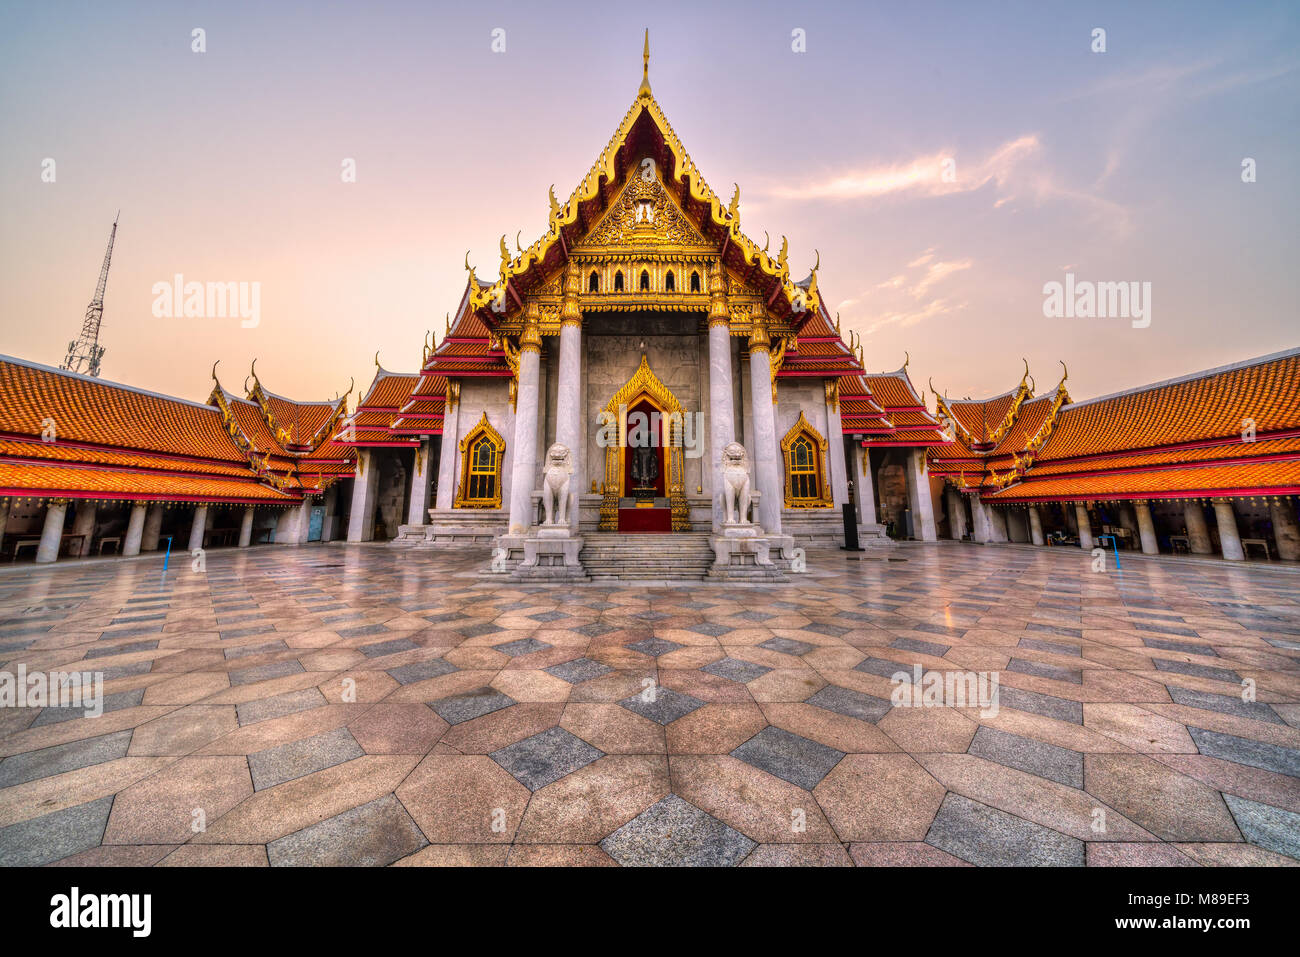 The Bangkok Marble Temple, Wat Benchamabophit Dusit wanaram.  Bangkok, Thailandia. Stock Photo